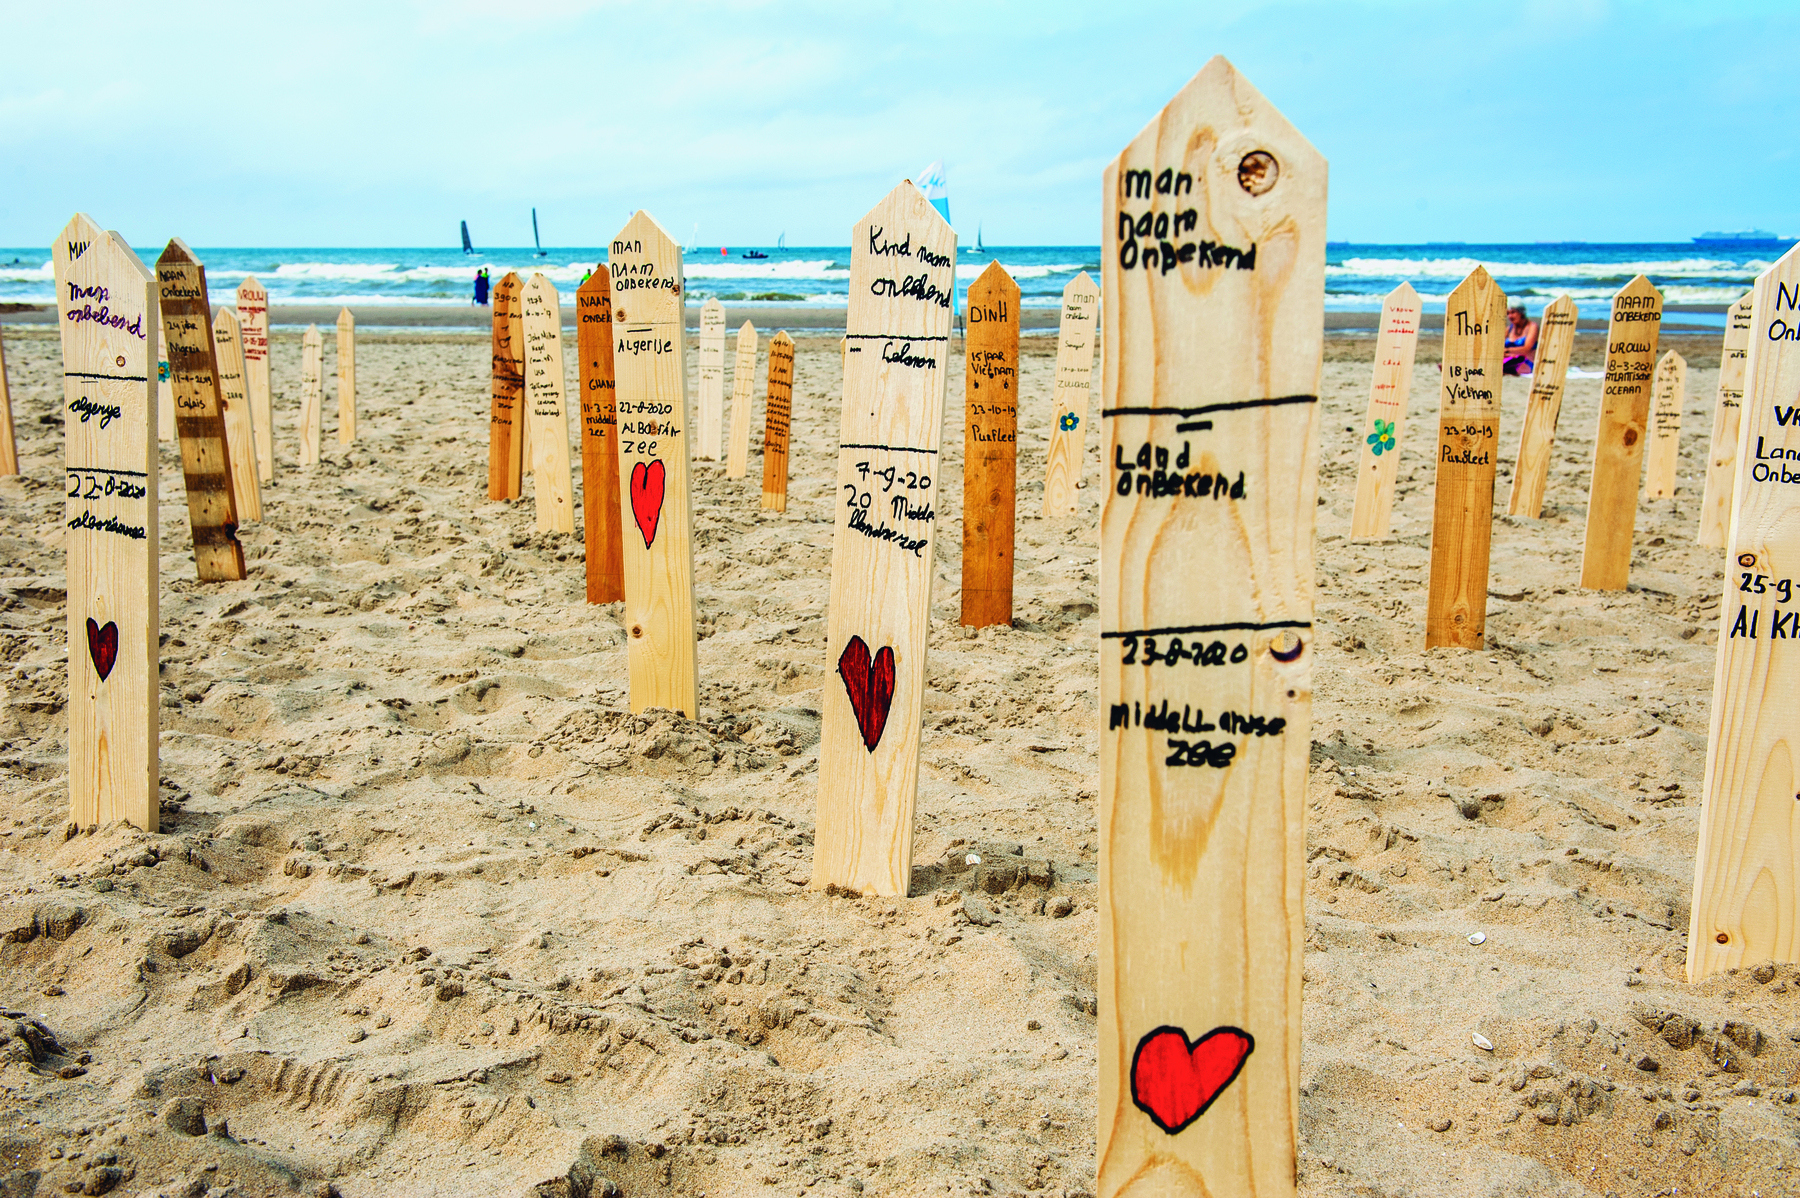 Imagem: Fotografia. Estacas de madeira fincadas na areia da praia. Em cada uma delas nomes escritos e um coração desenhado. Fim da imagem.